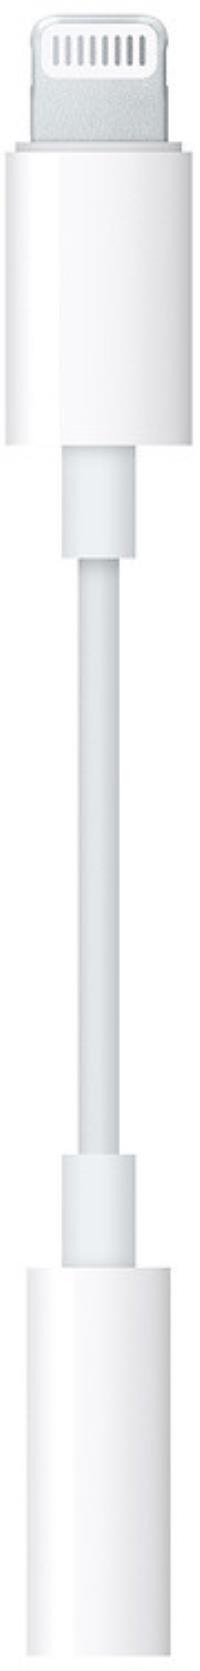 Apple adapter Lightning - 3.5mm Headphone Jack | MMX62ZM/A